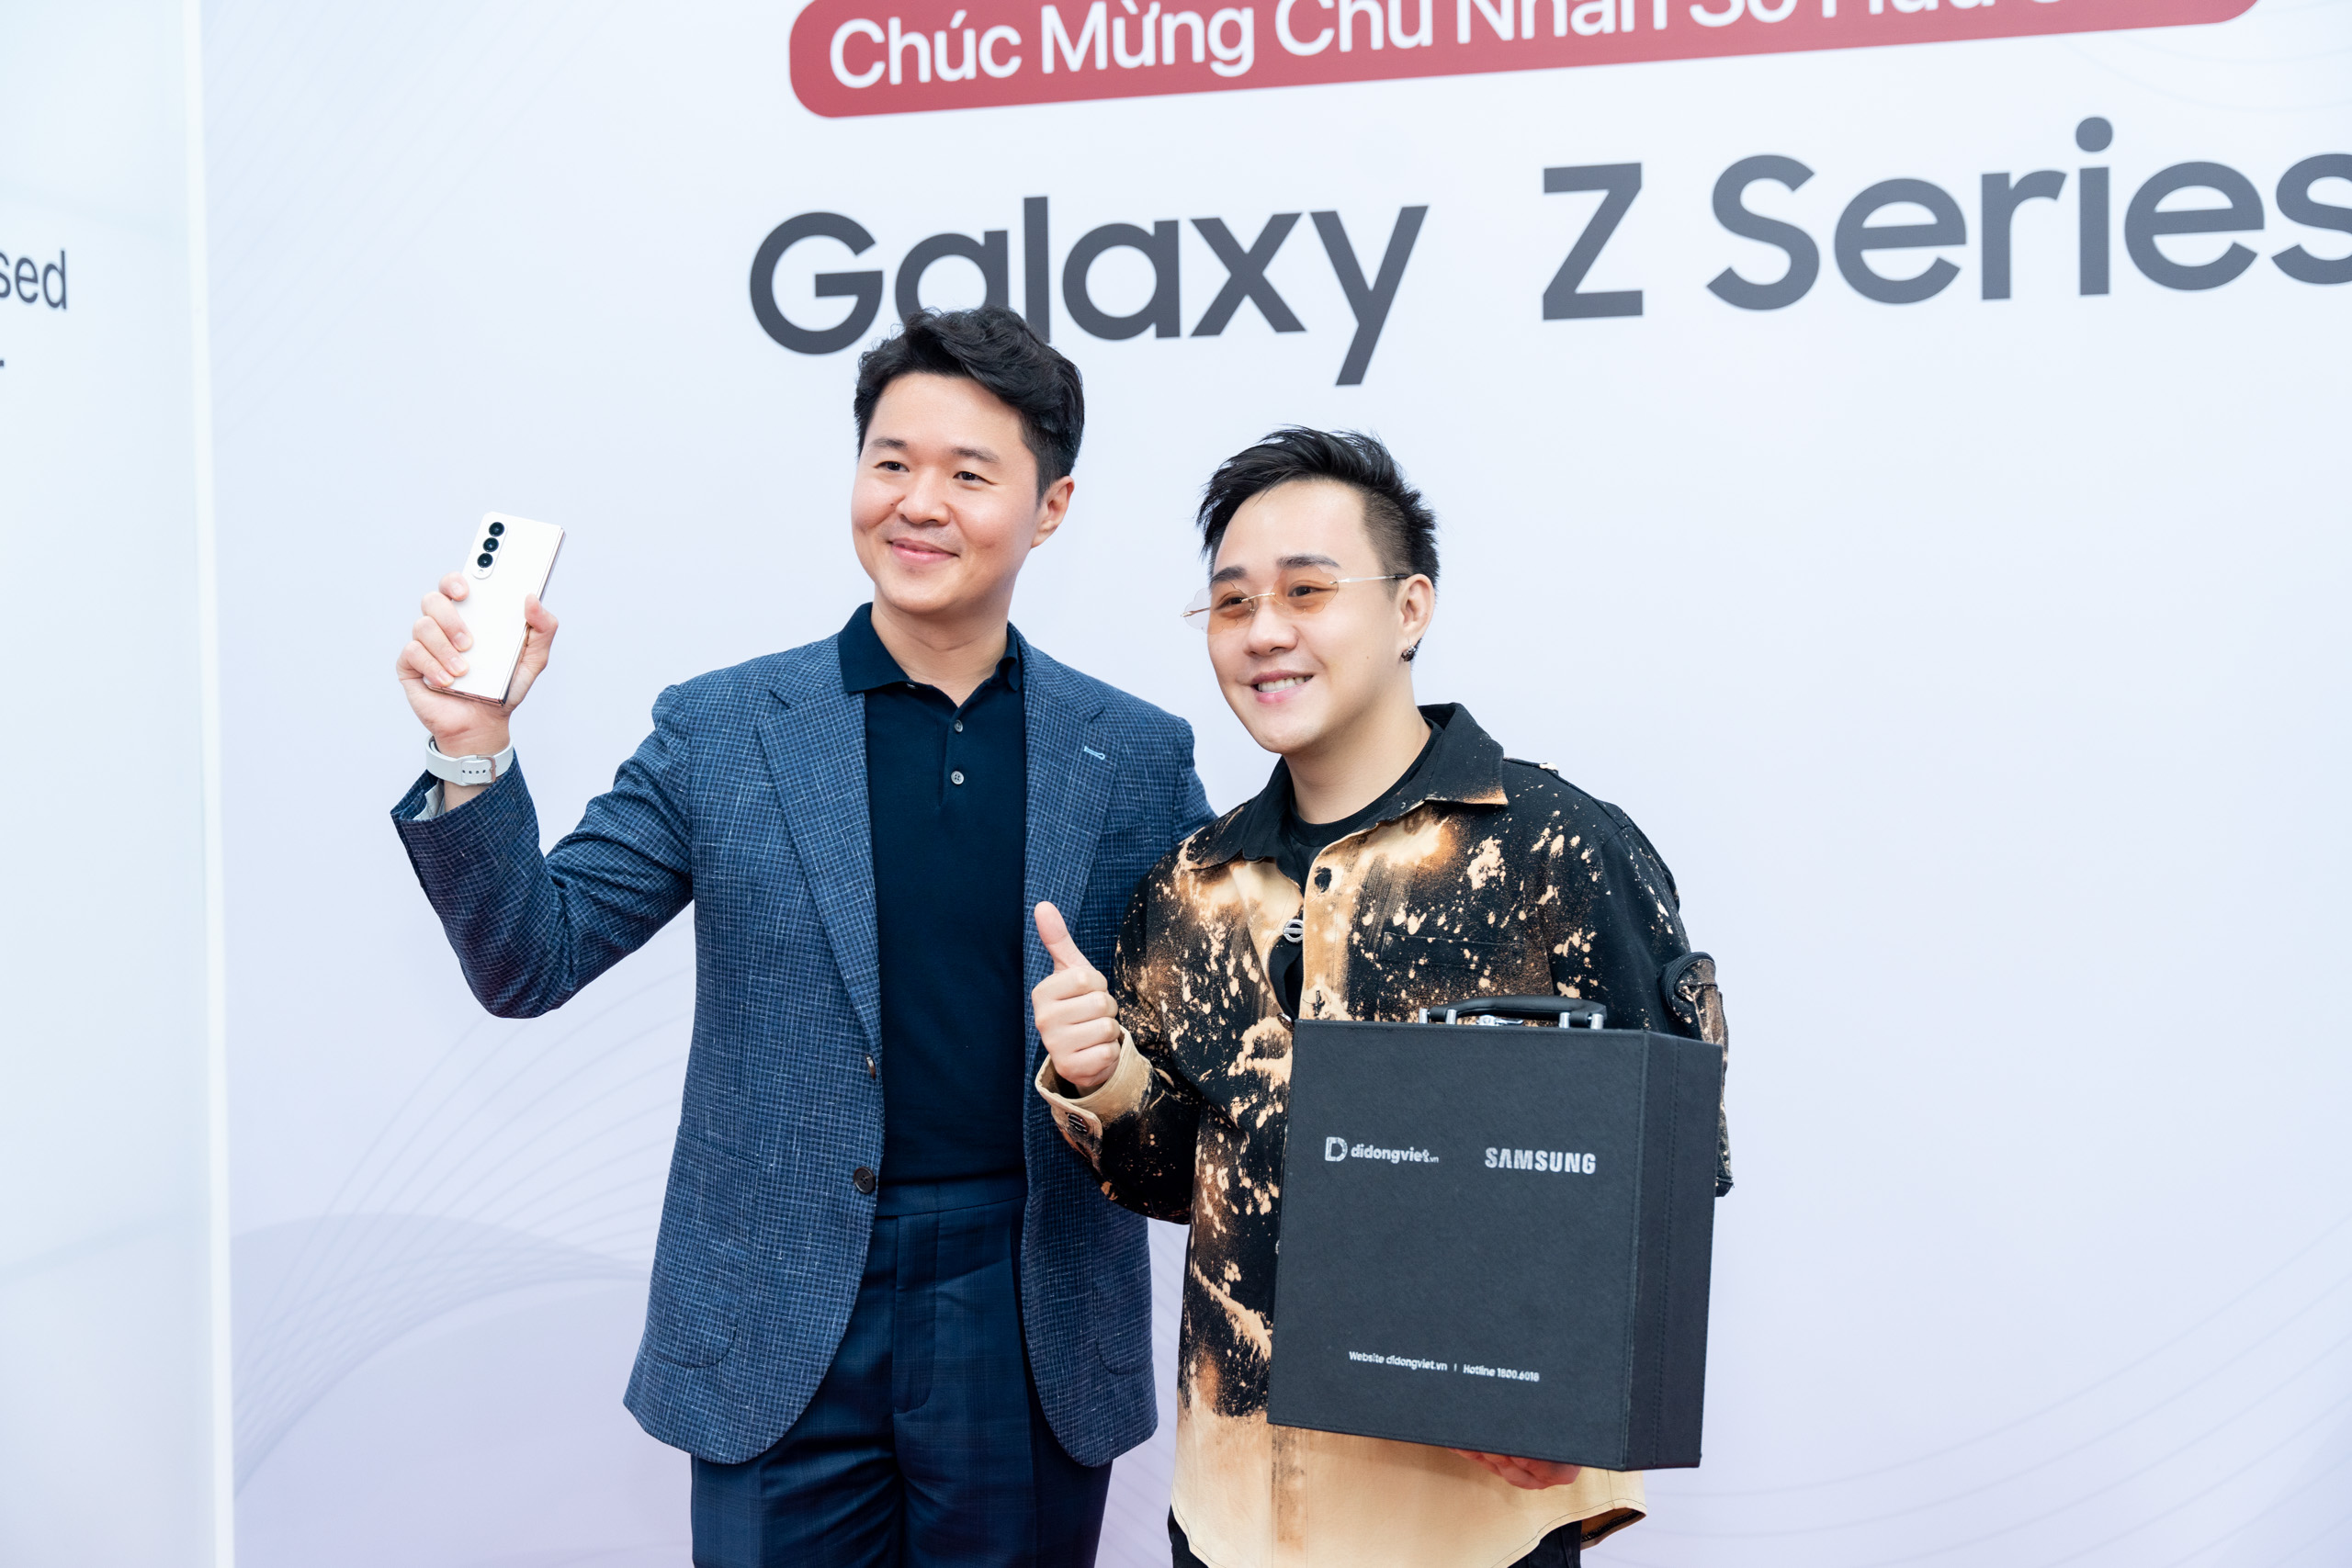 MC Trác Thuý Miêu, Trung Quân Idol, Stylist Thuận Nguyễn... chọn Trade-in lên đời Galaxy Z Fold4 và Z Flip4